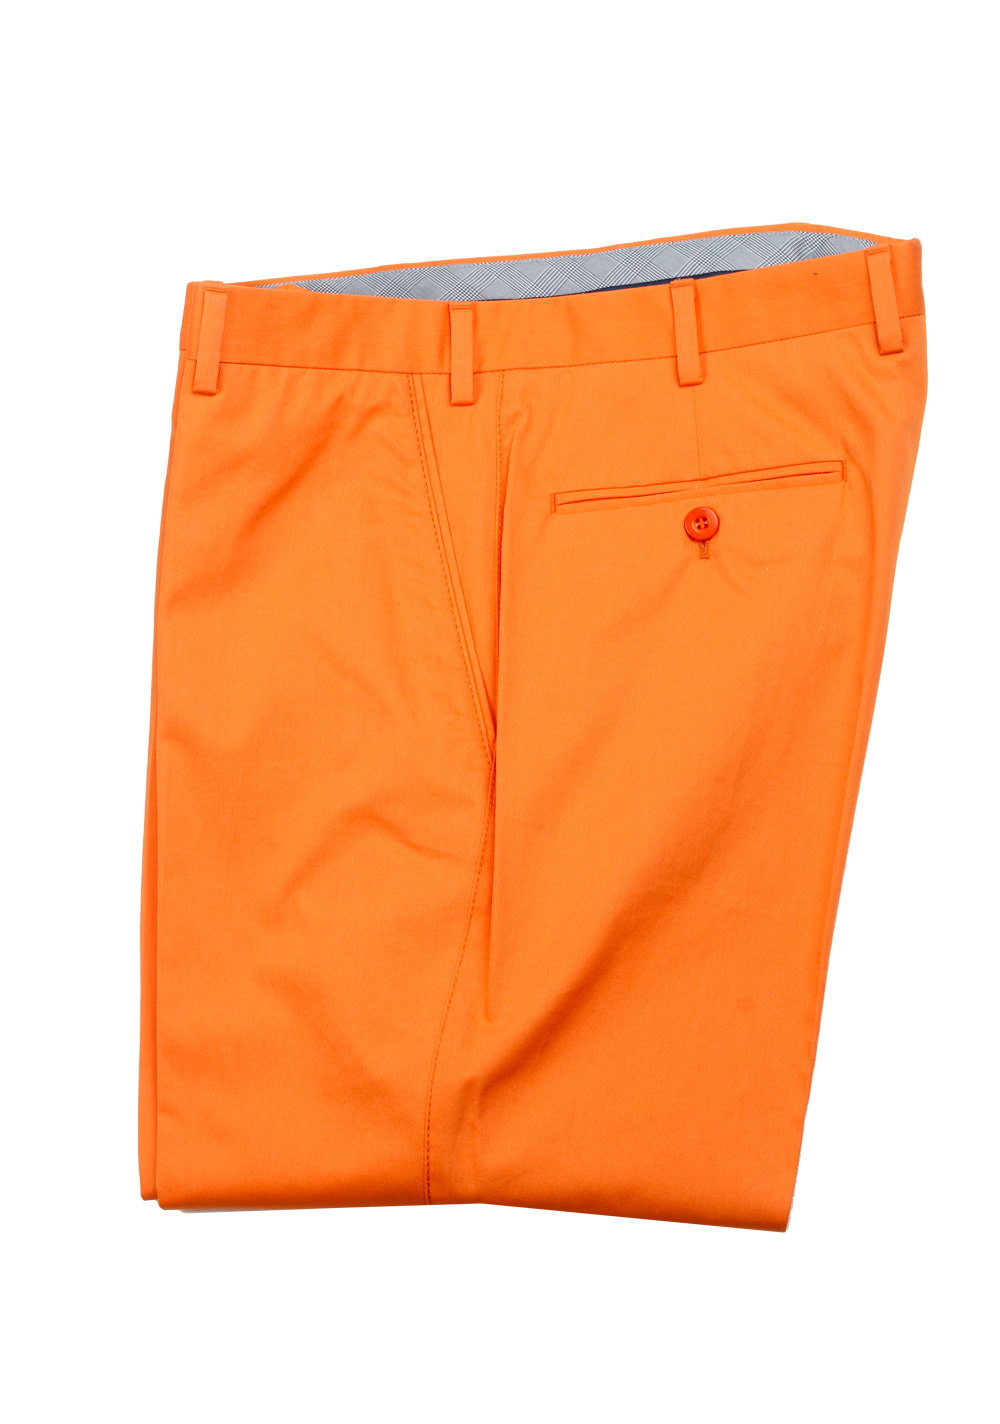 Brioni Orange Cotton Trousers Size 56 / 40 U.S. | Costume Limité